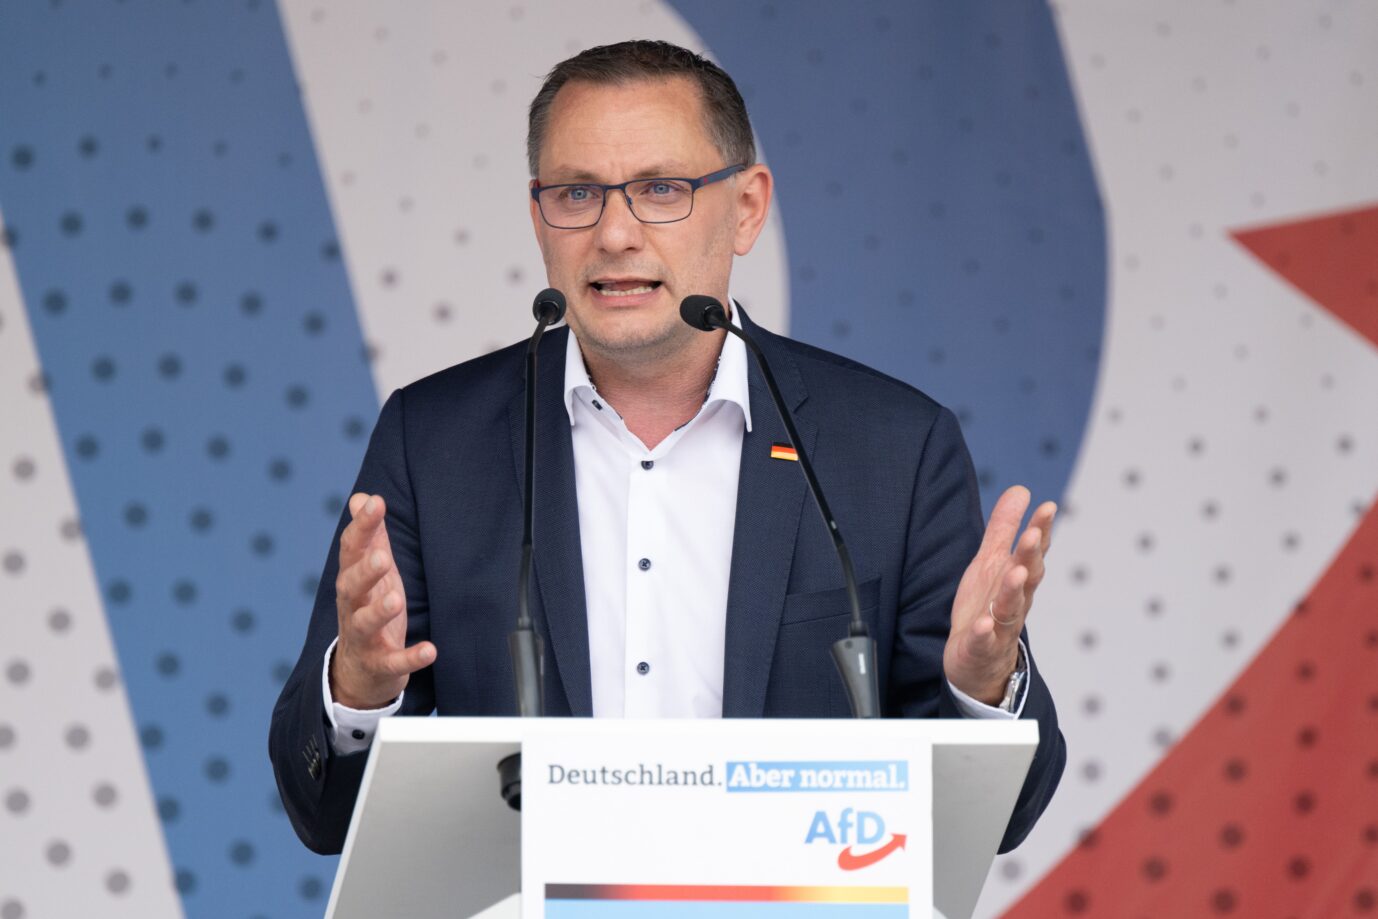 Tino Chrupalla, AfD-Bundesvorsitzender und Fraktionsvorsitzender der AfD, spricht auf dem Marienplatz auf einer Wahlkampfveranstaltung seiner Partei. Anlass sind die Landratswahlen im Landkreis Görlitz am 12. Juni 2022.